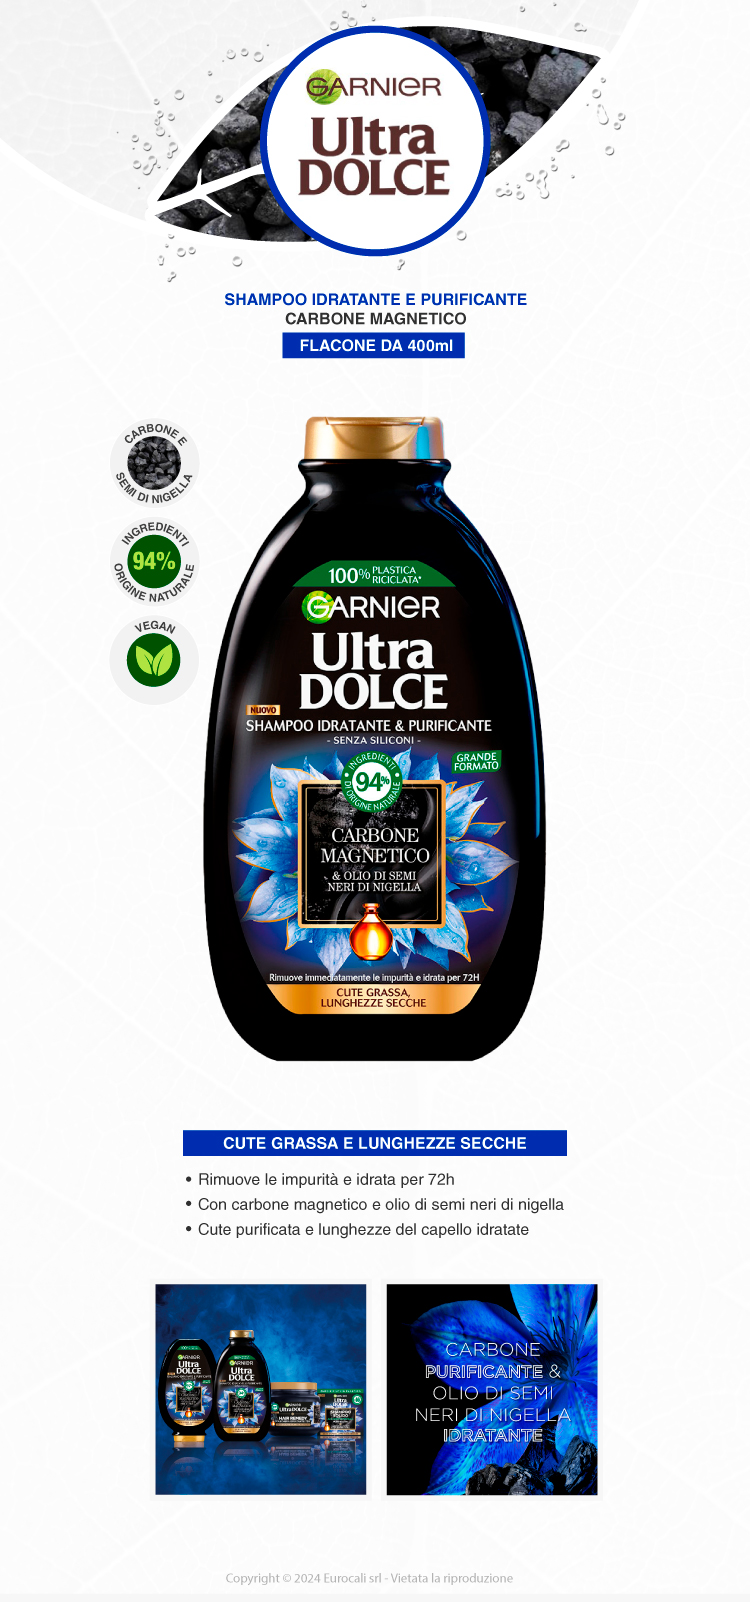 Garnier Ultra Dolce Shampoo Idratante Purificante Carbone Magnetico 400ml